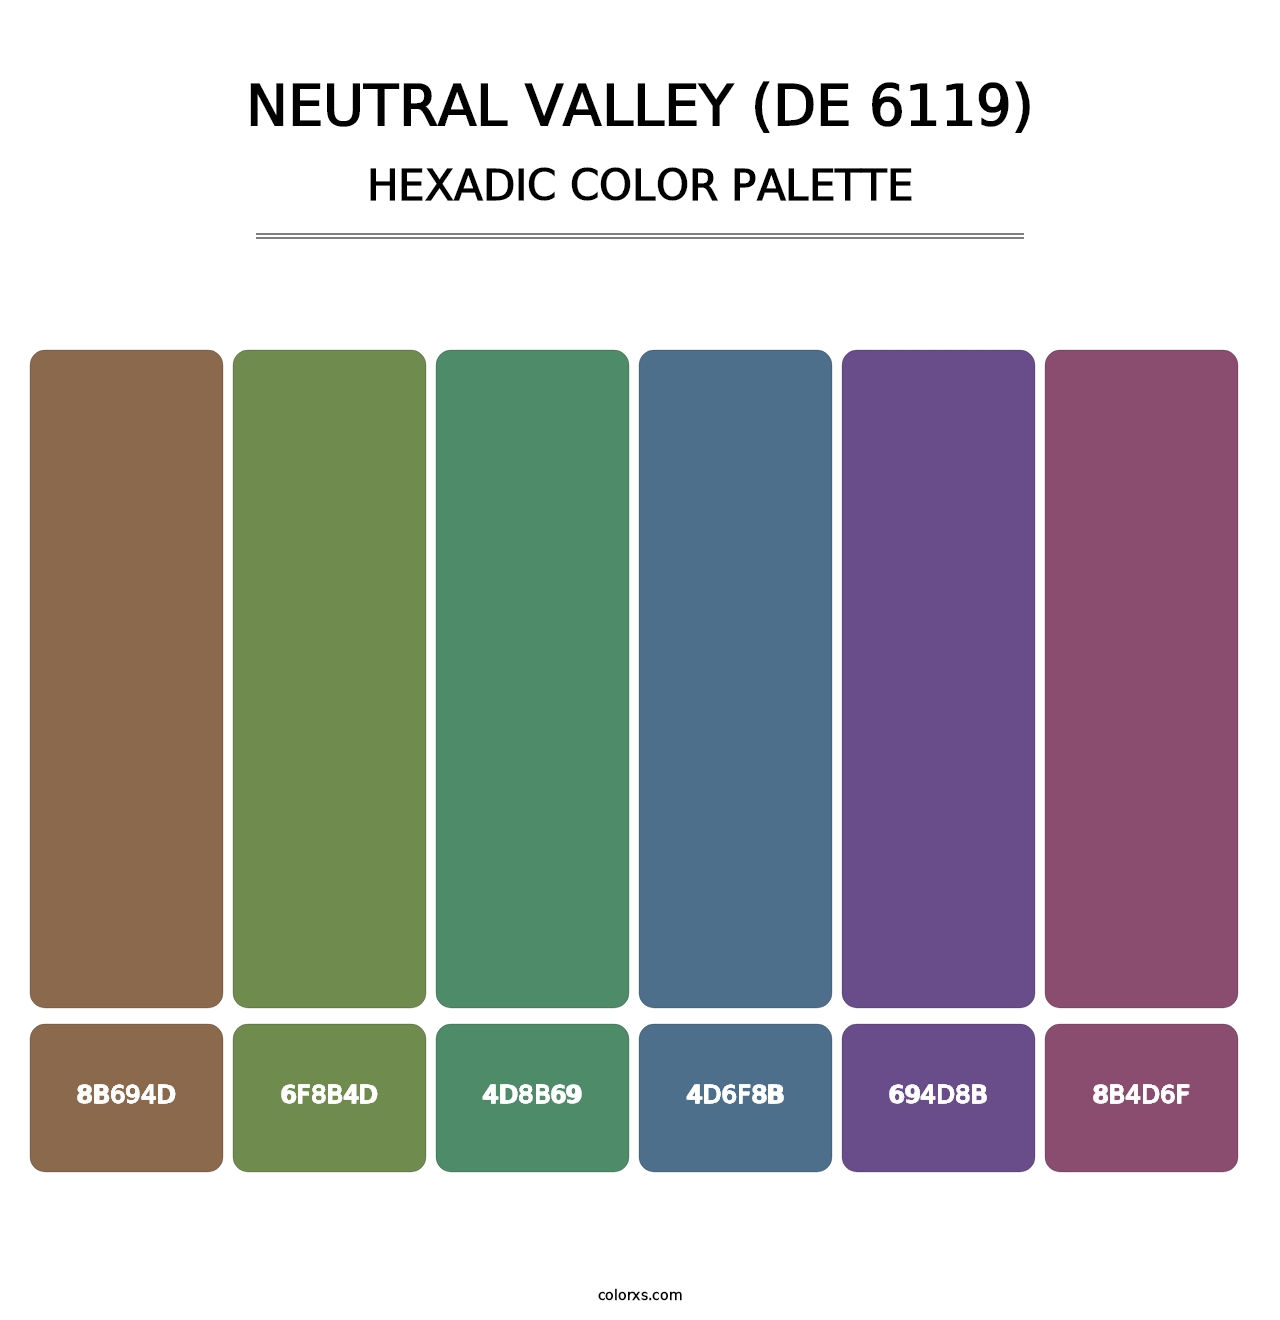 Neutral Valley (DE 6119) - Hexadic Color Palette